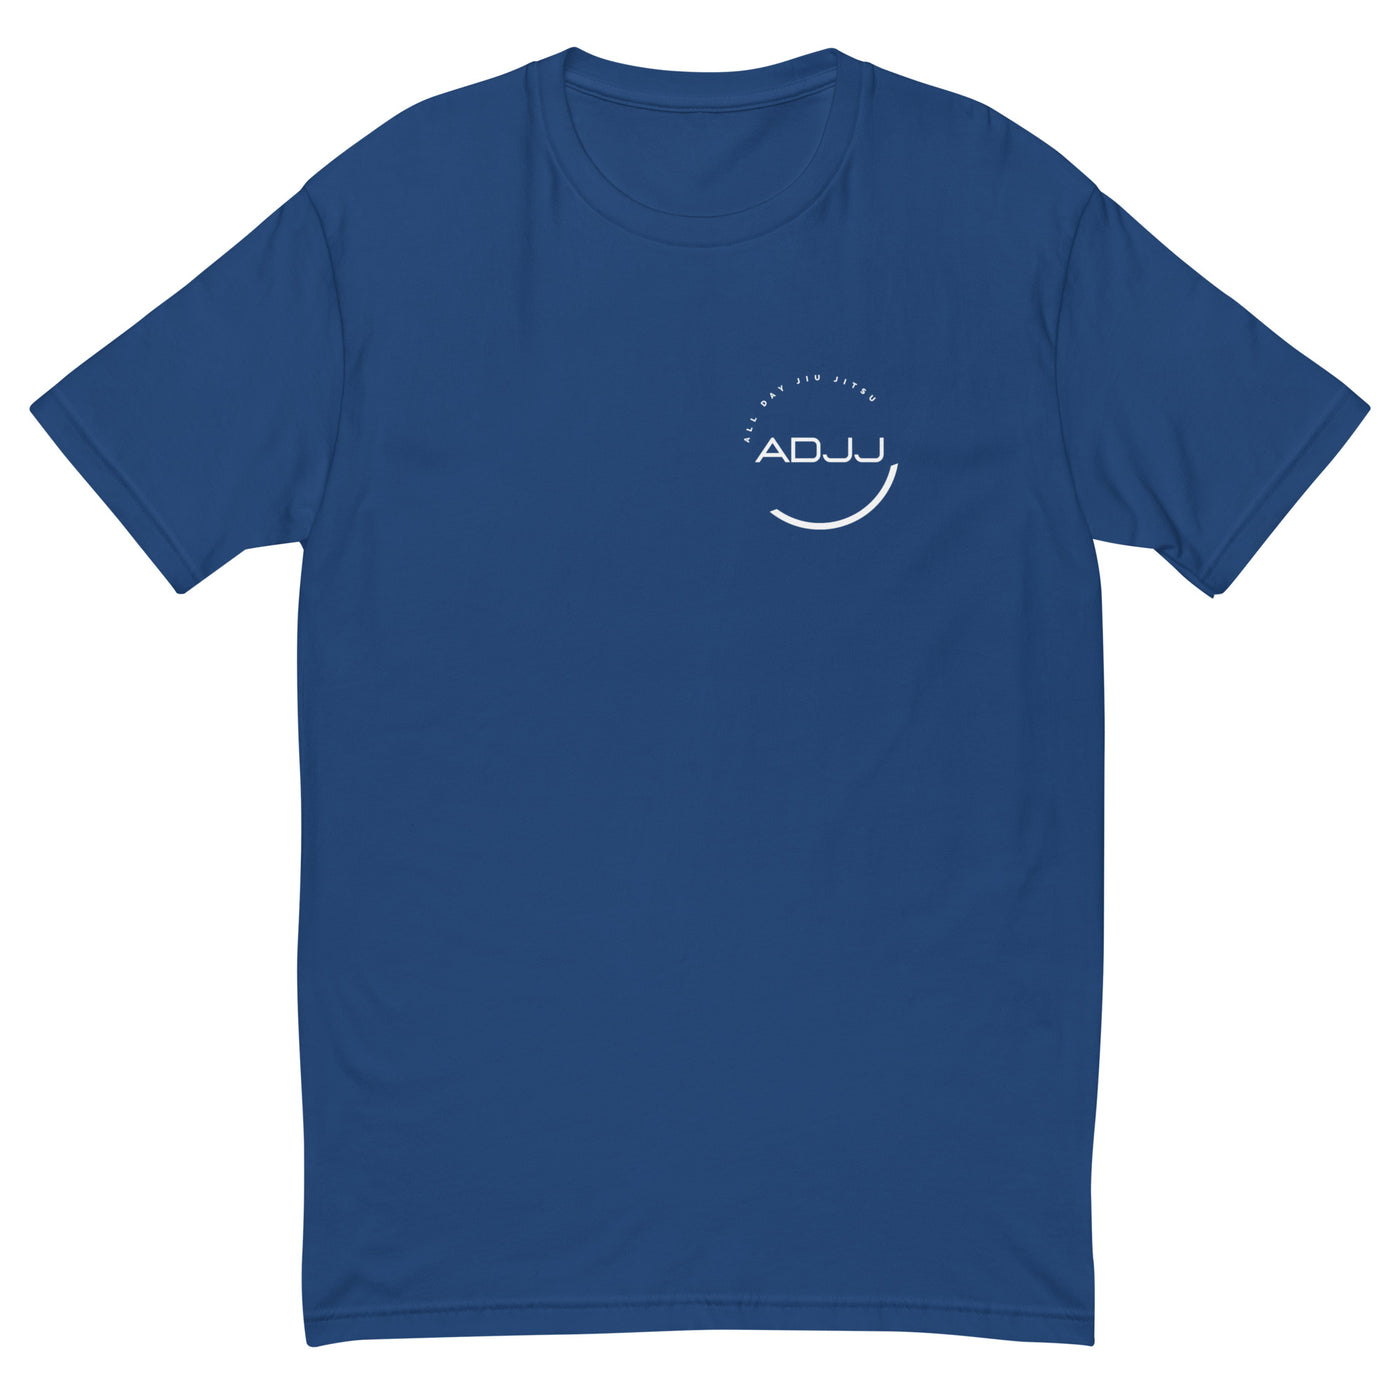 ADJJ Logo Short Sleeve T-shirt